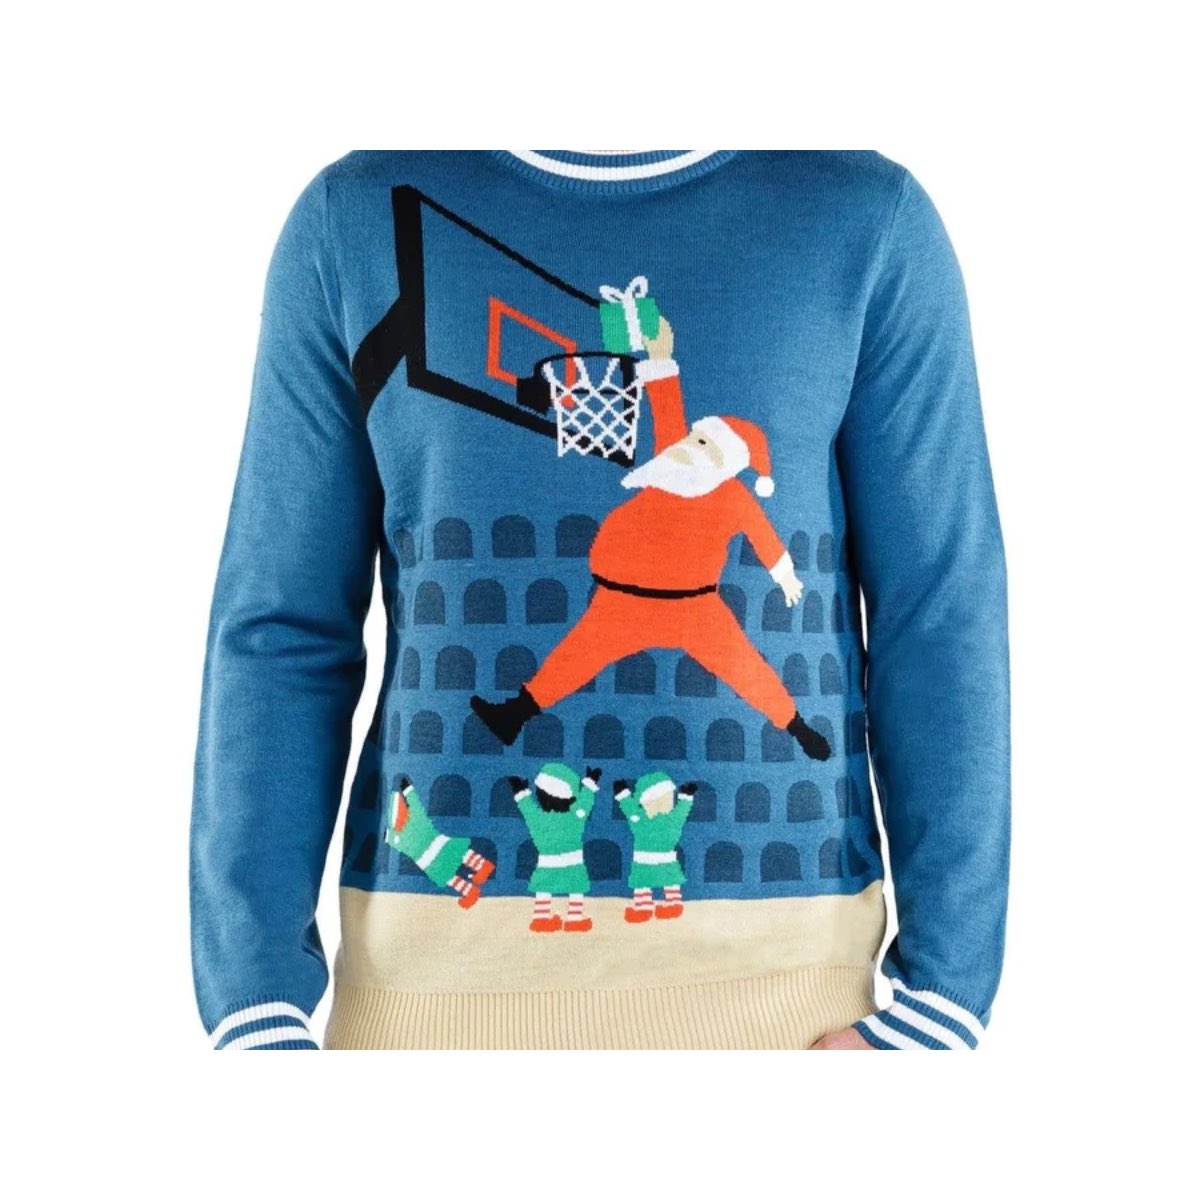 Basketball Christmas Sweater